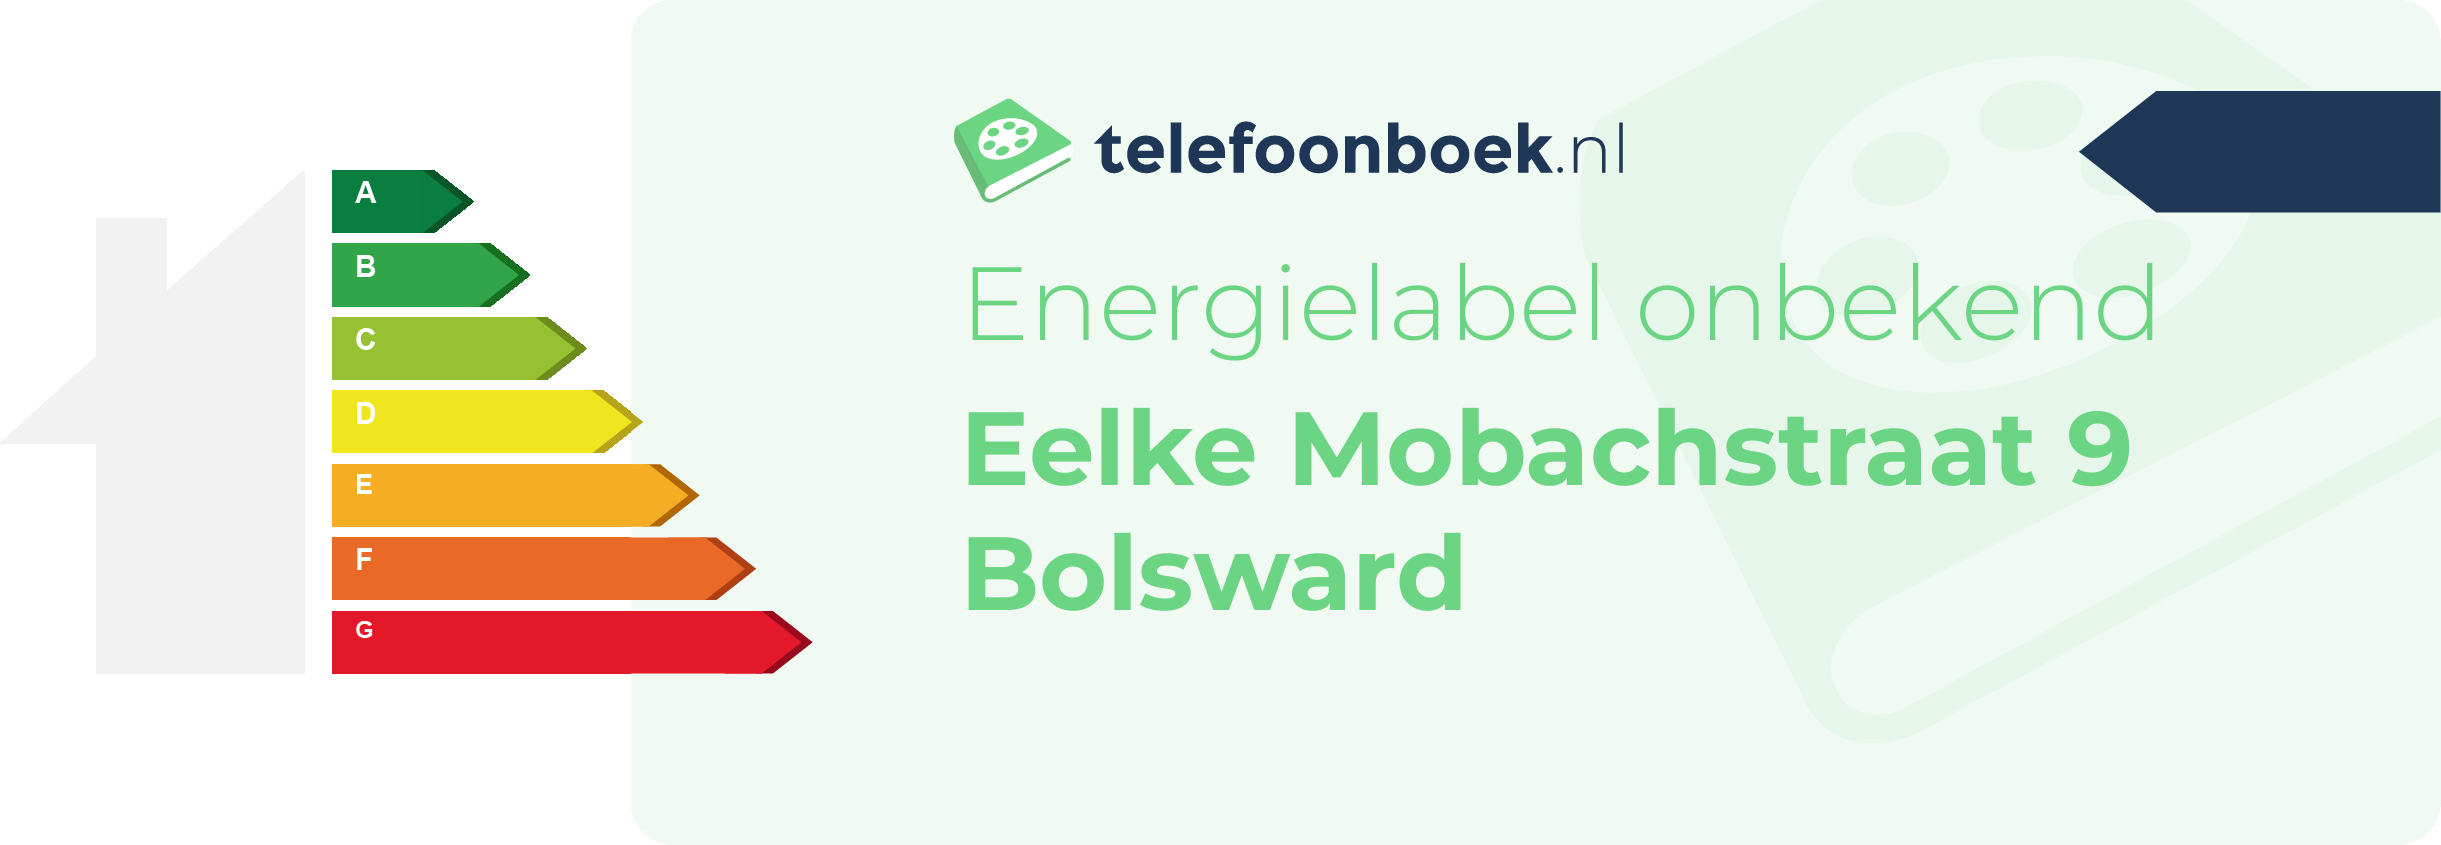 Energielabel Eelke Mobachstraat 9 Bolsward